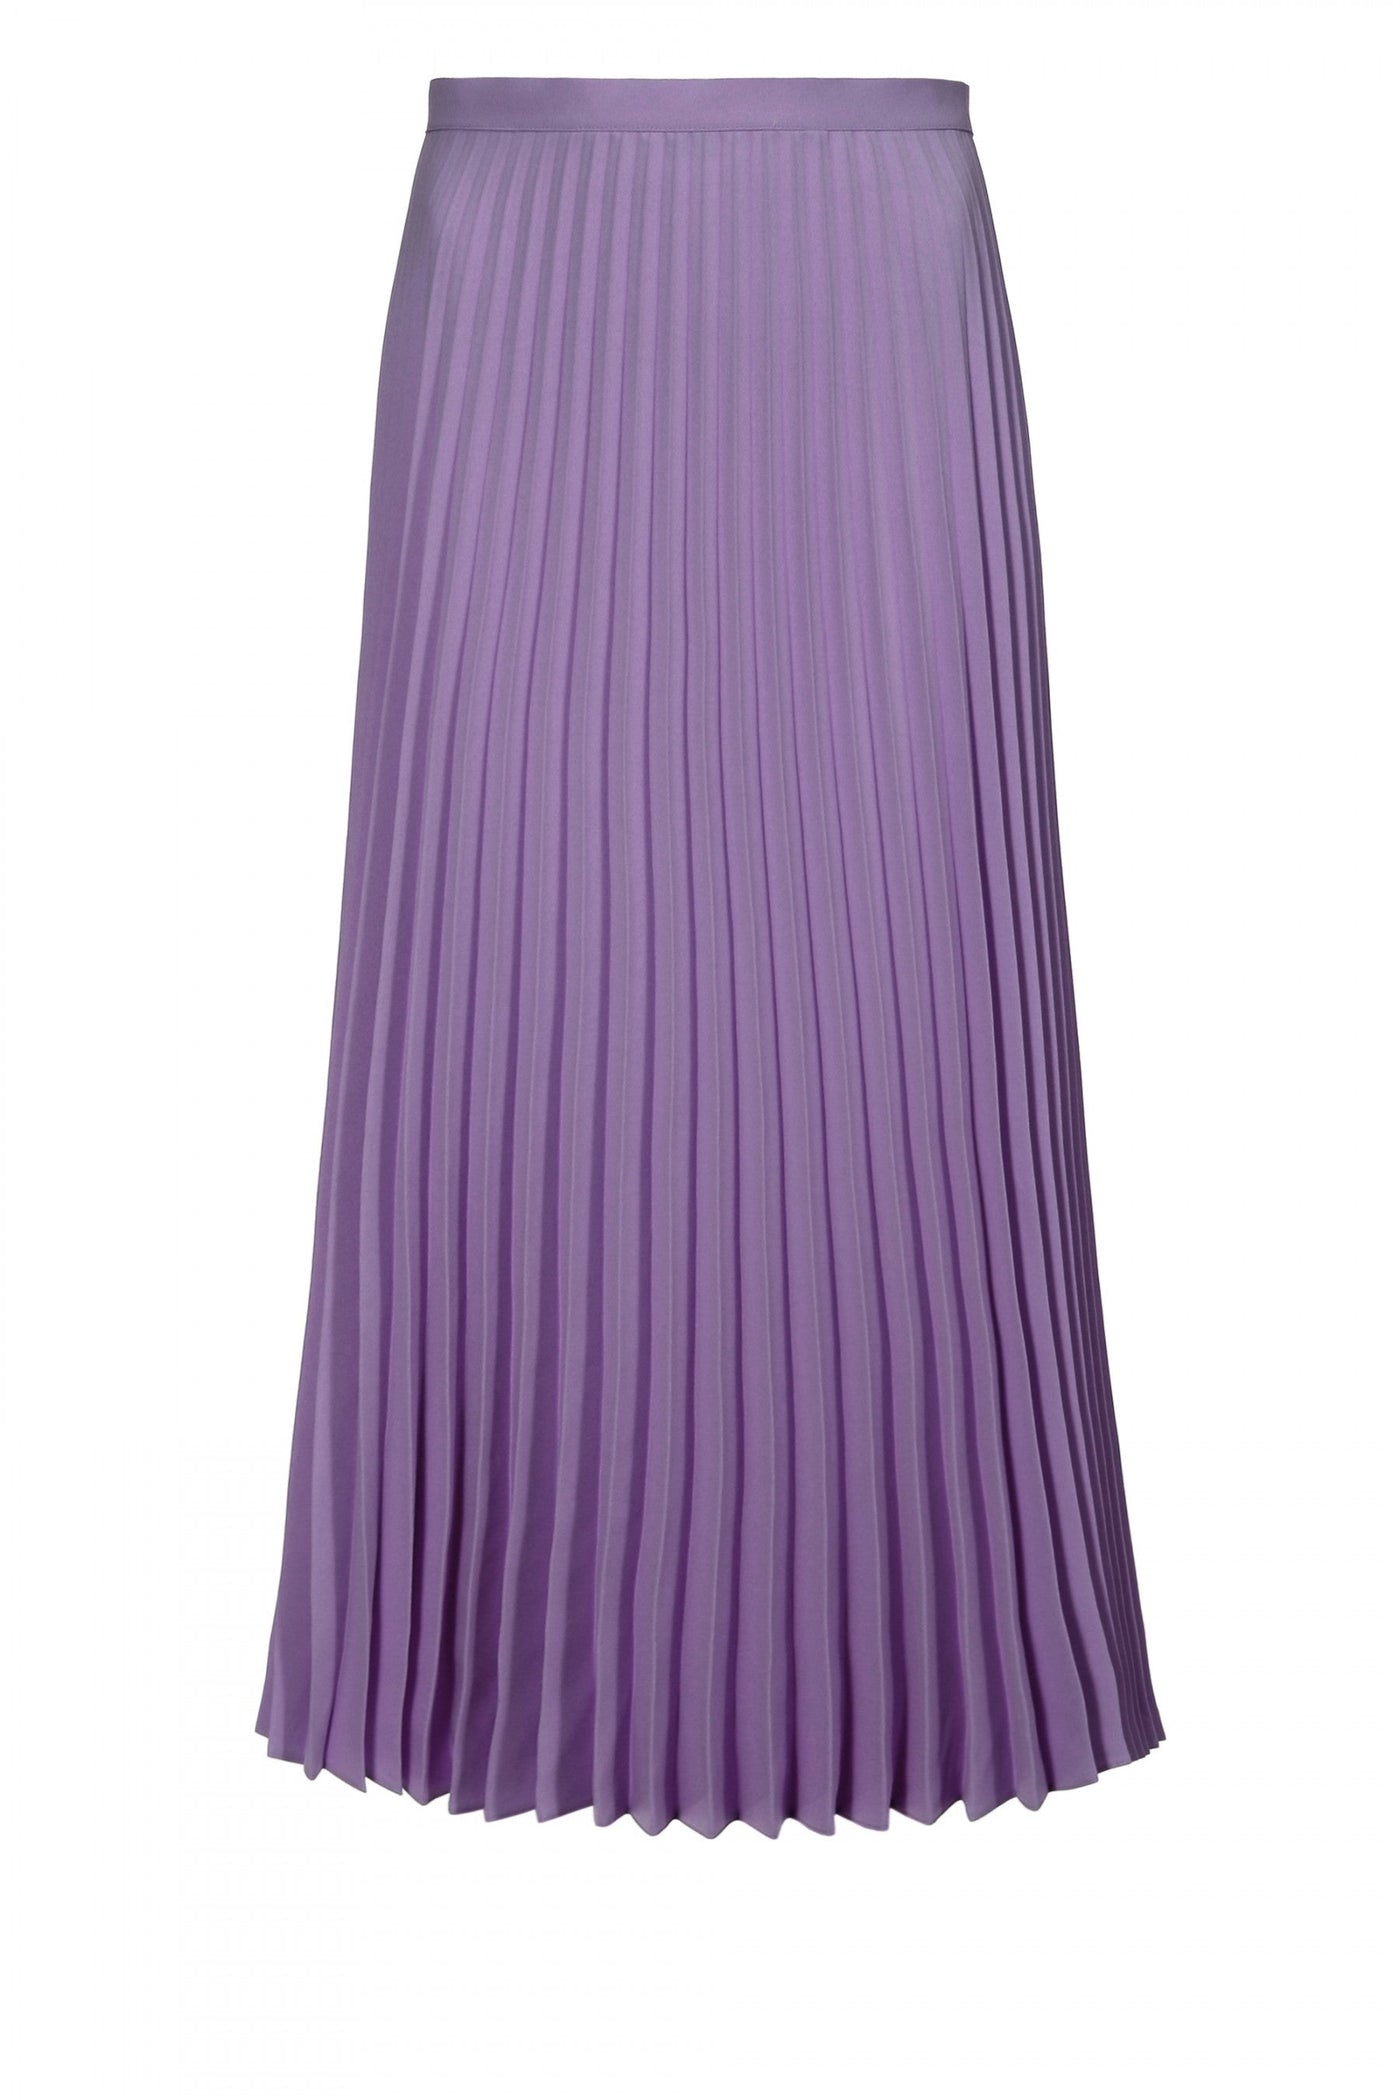 Elvira Purple Haze Pleatted Midi Skirt